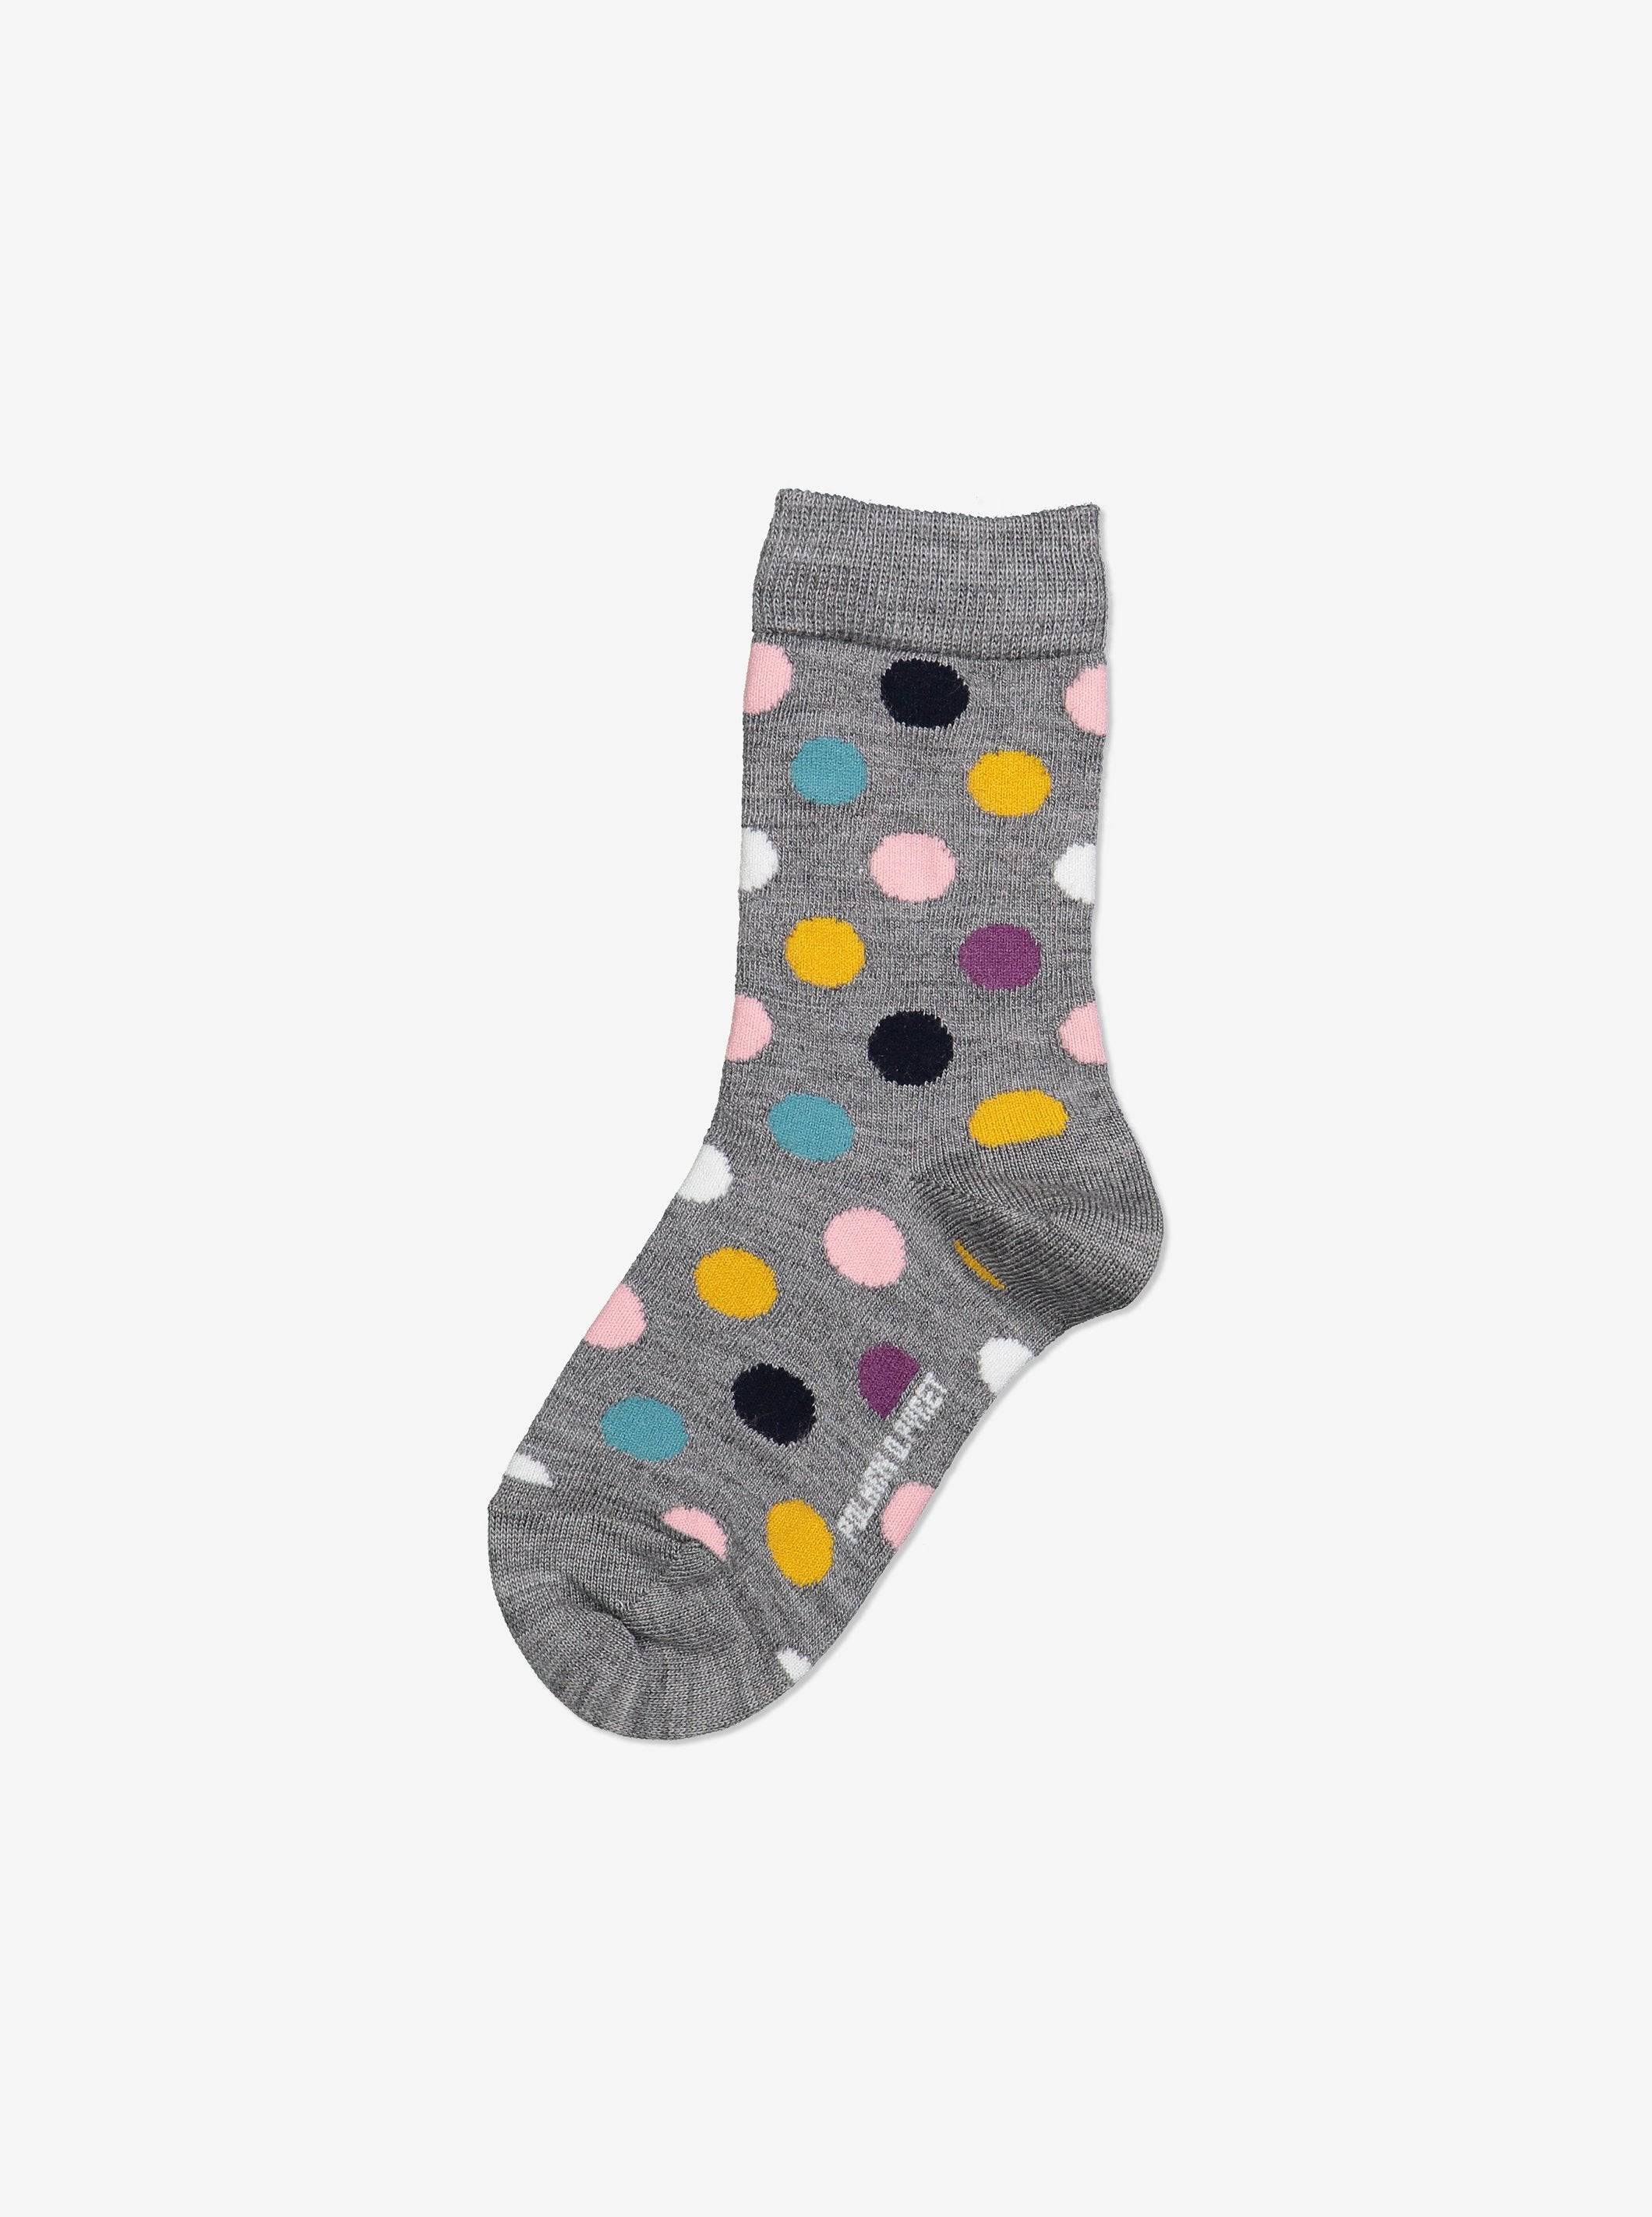 Polka Dot Merino Kids Socks